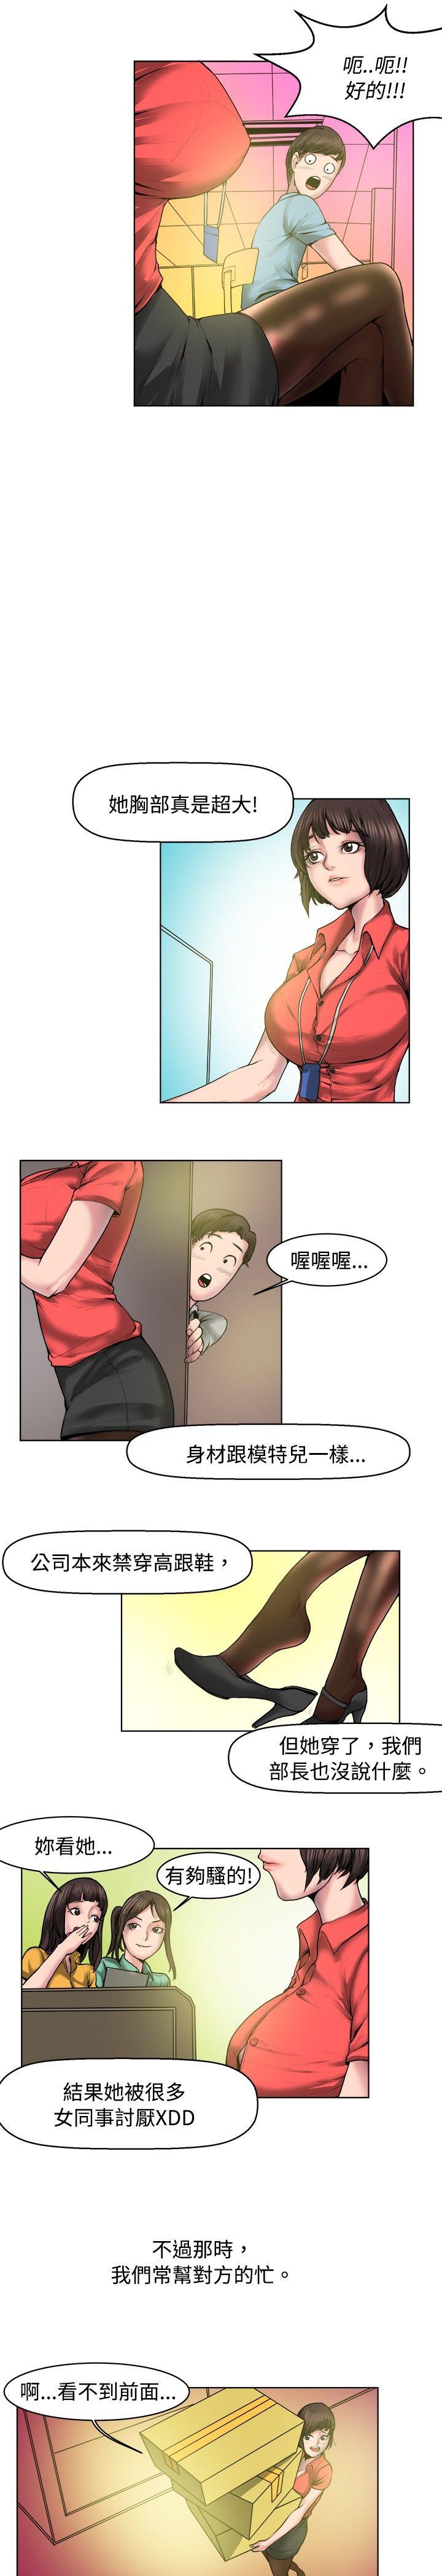 韩国污漫画 秘密Story 女同事的不伦恋(上) 3